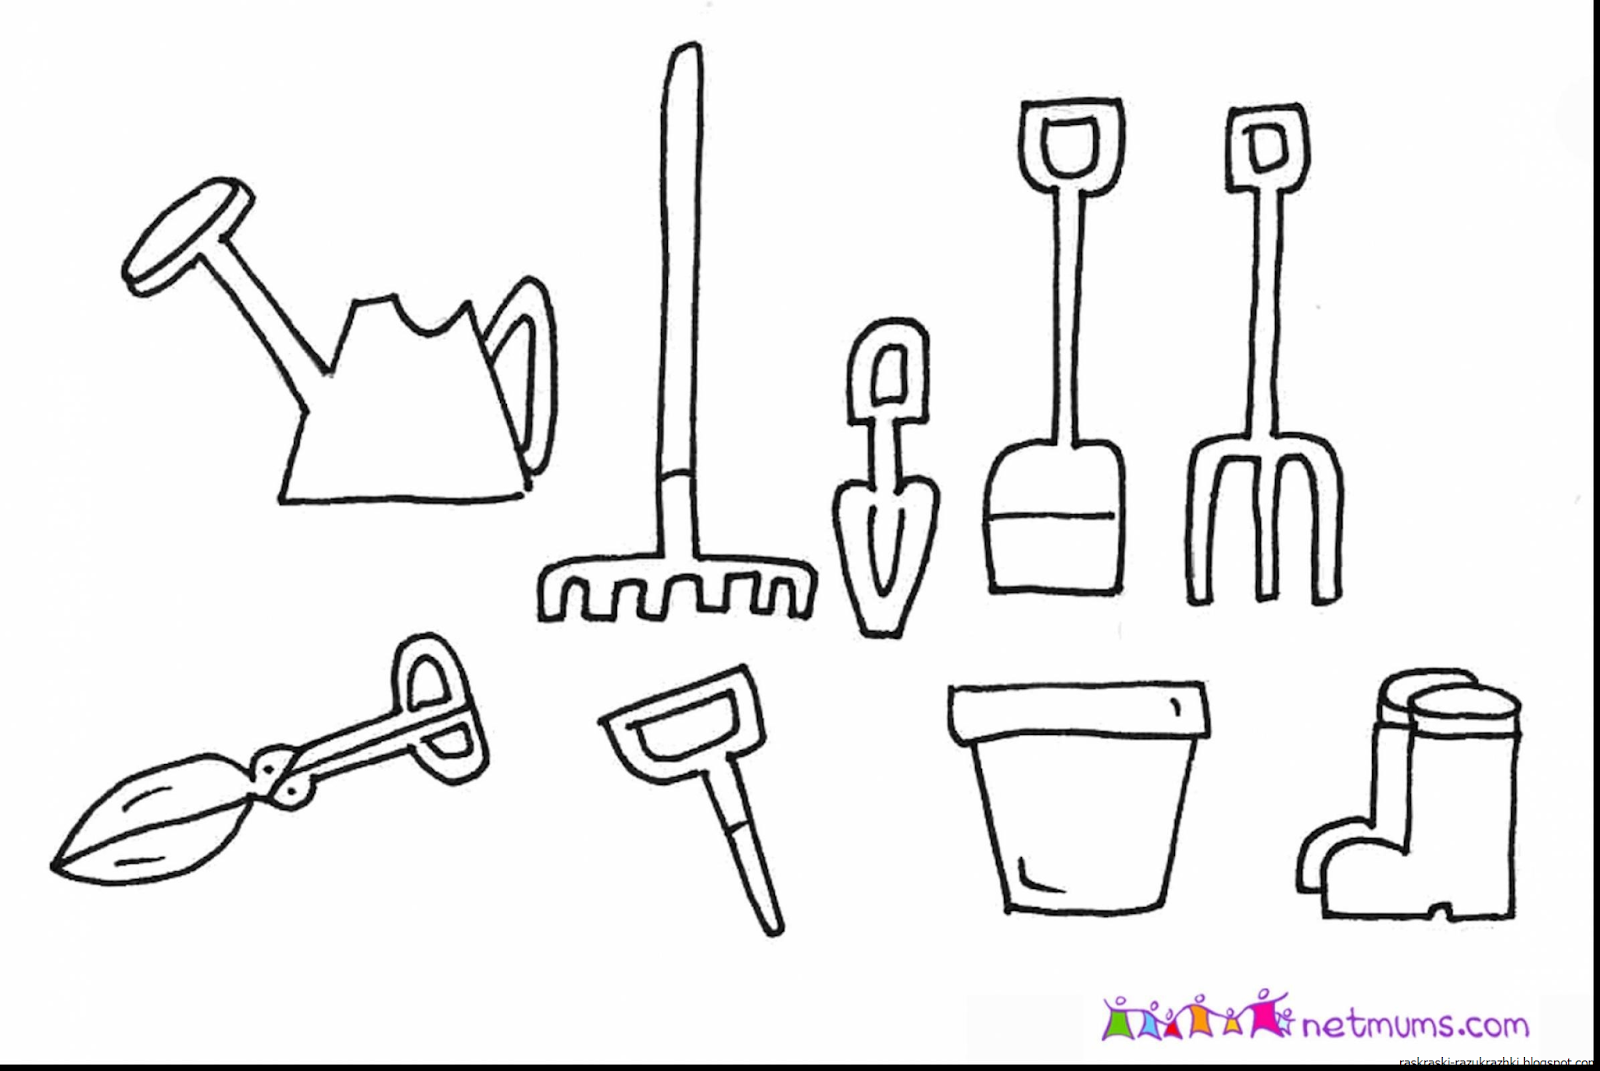 Coloring tools. Инструменты раскраска для детей. Раскраски инструменты строительные. Строительные инструменты раскраска для детей. Раскраски для малышей инструменты.